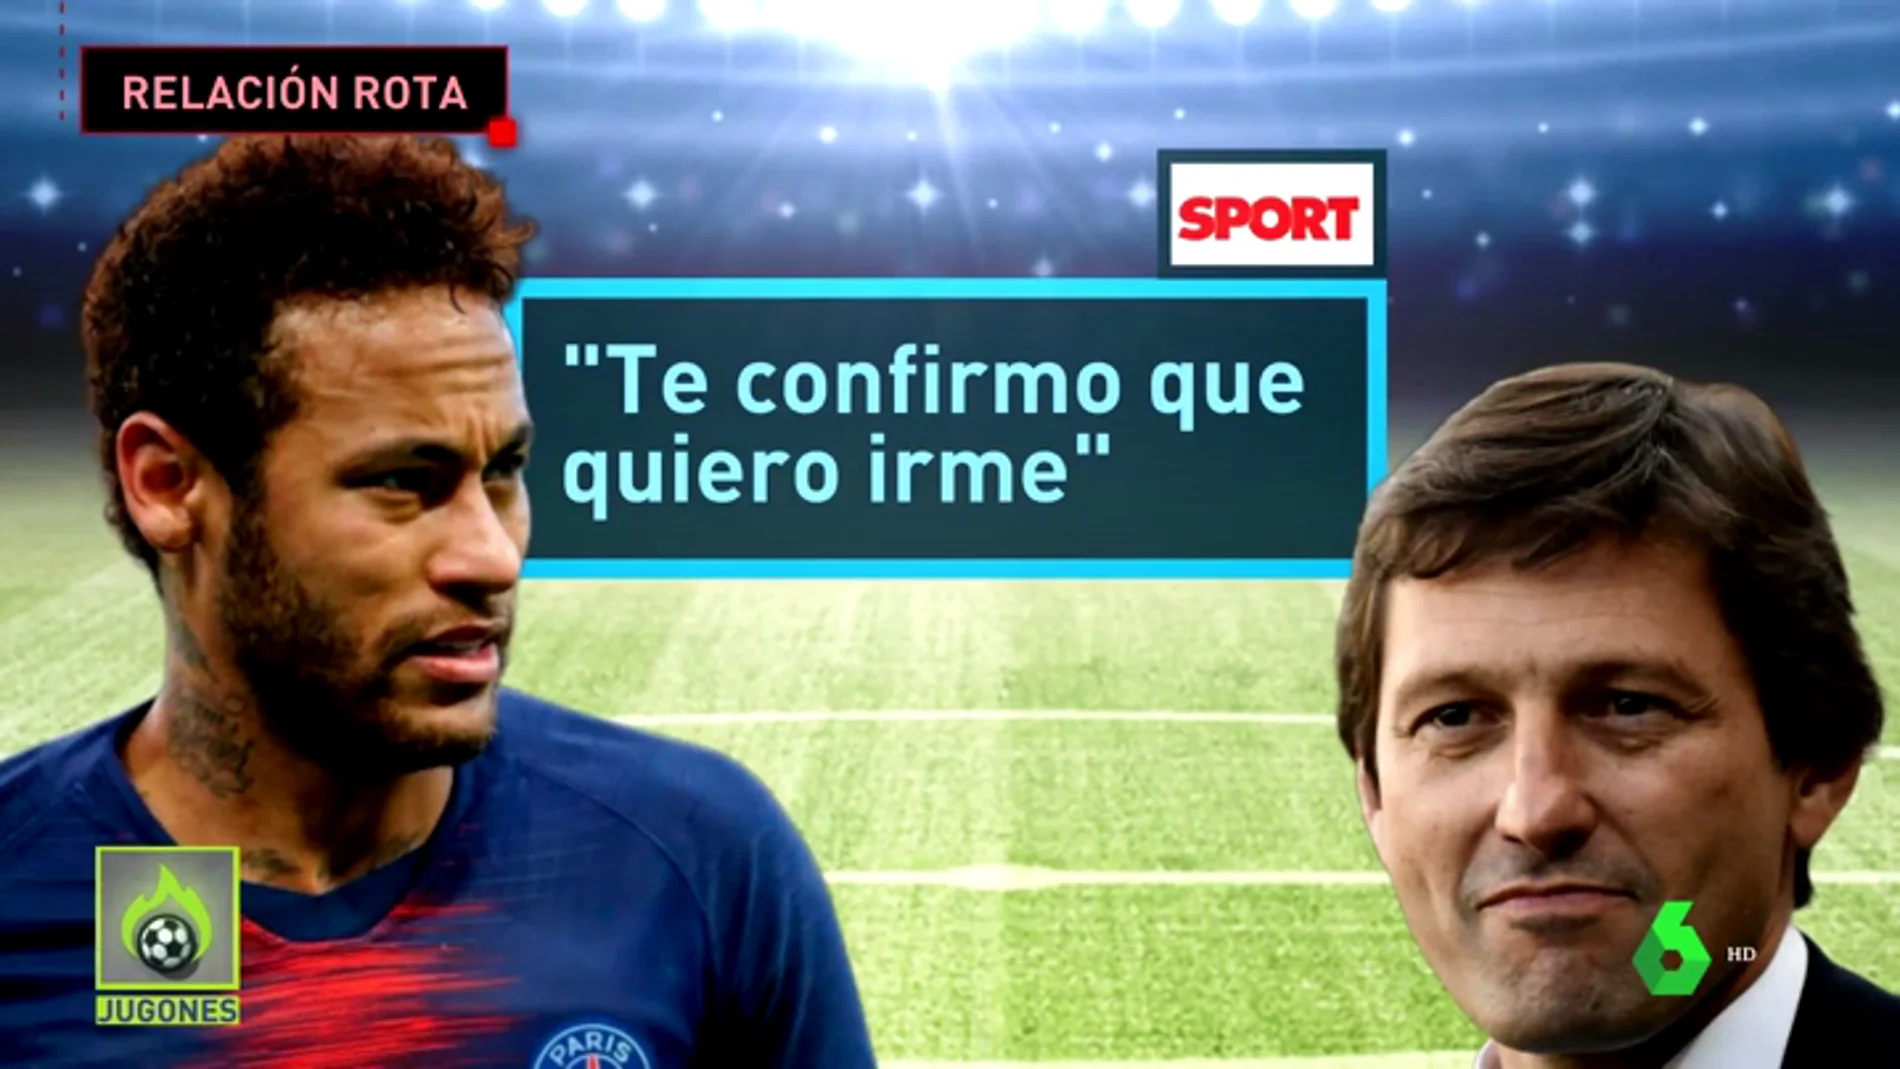 La situación ya es insostenible: Neymar comunica que quiere irse del PSG